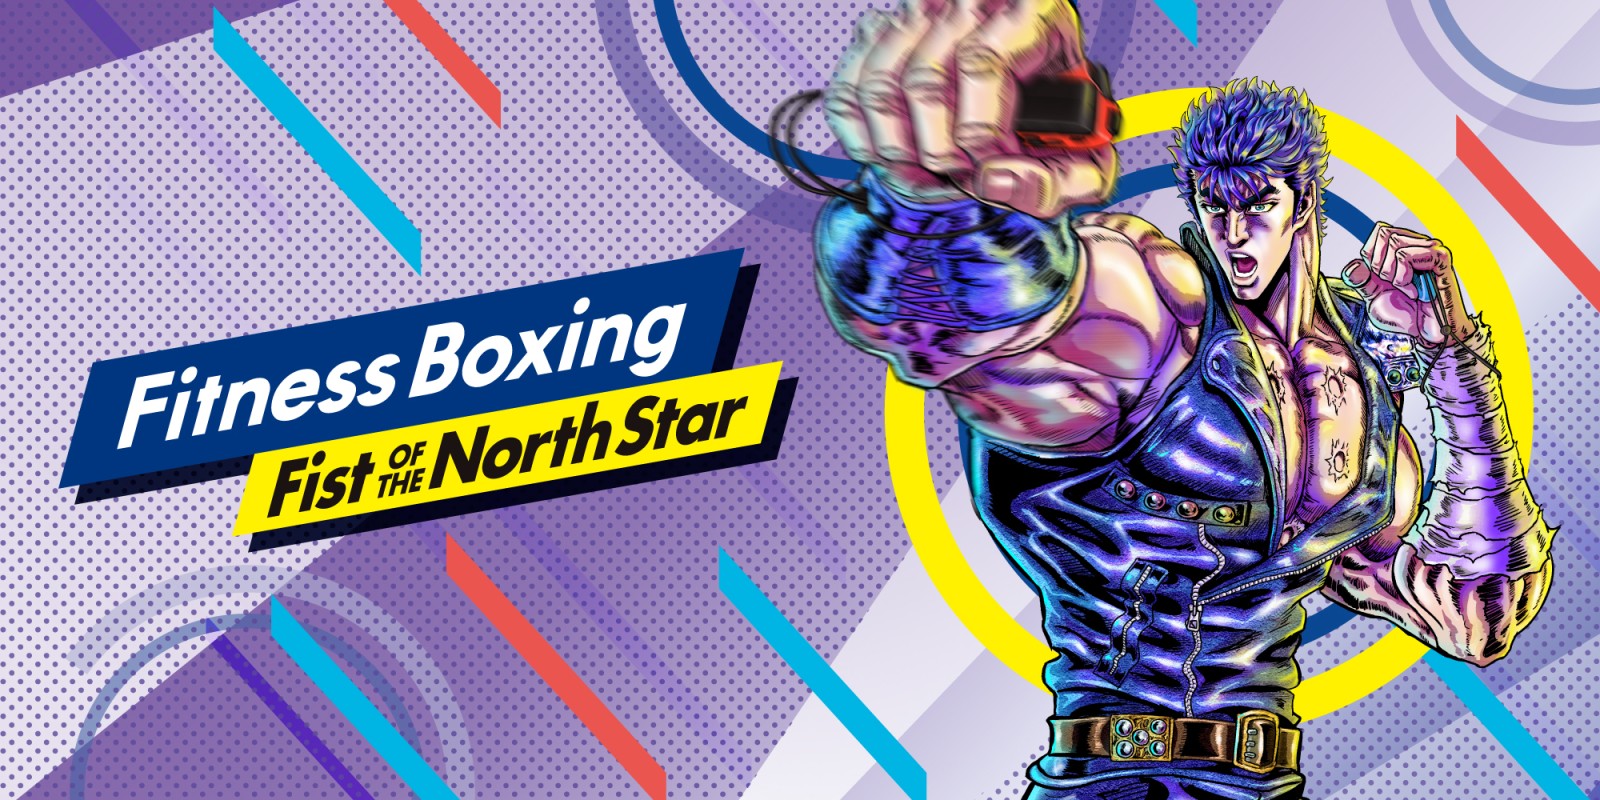 Het logo van Fitness Boxing Fist of the North Star met Kenshiro voorop